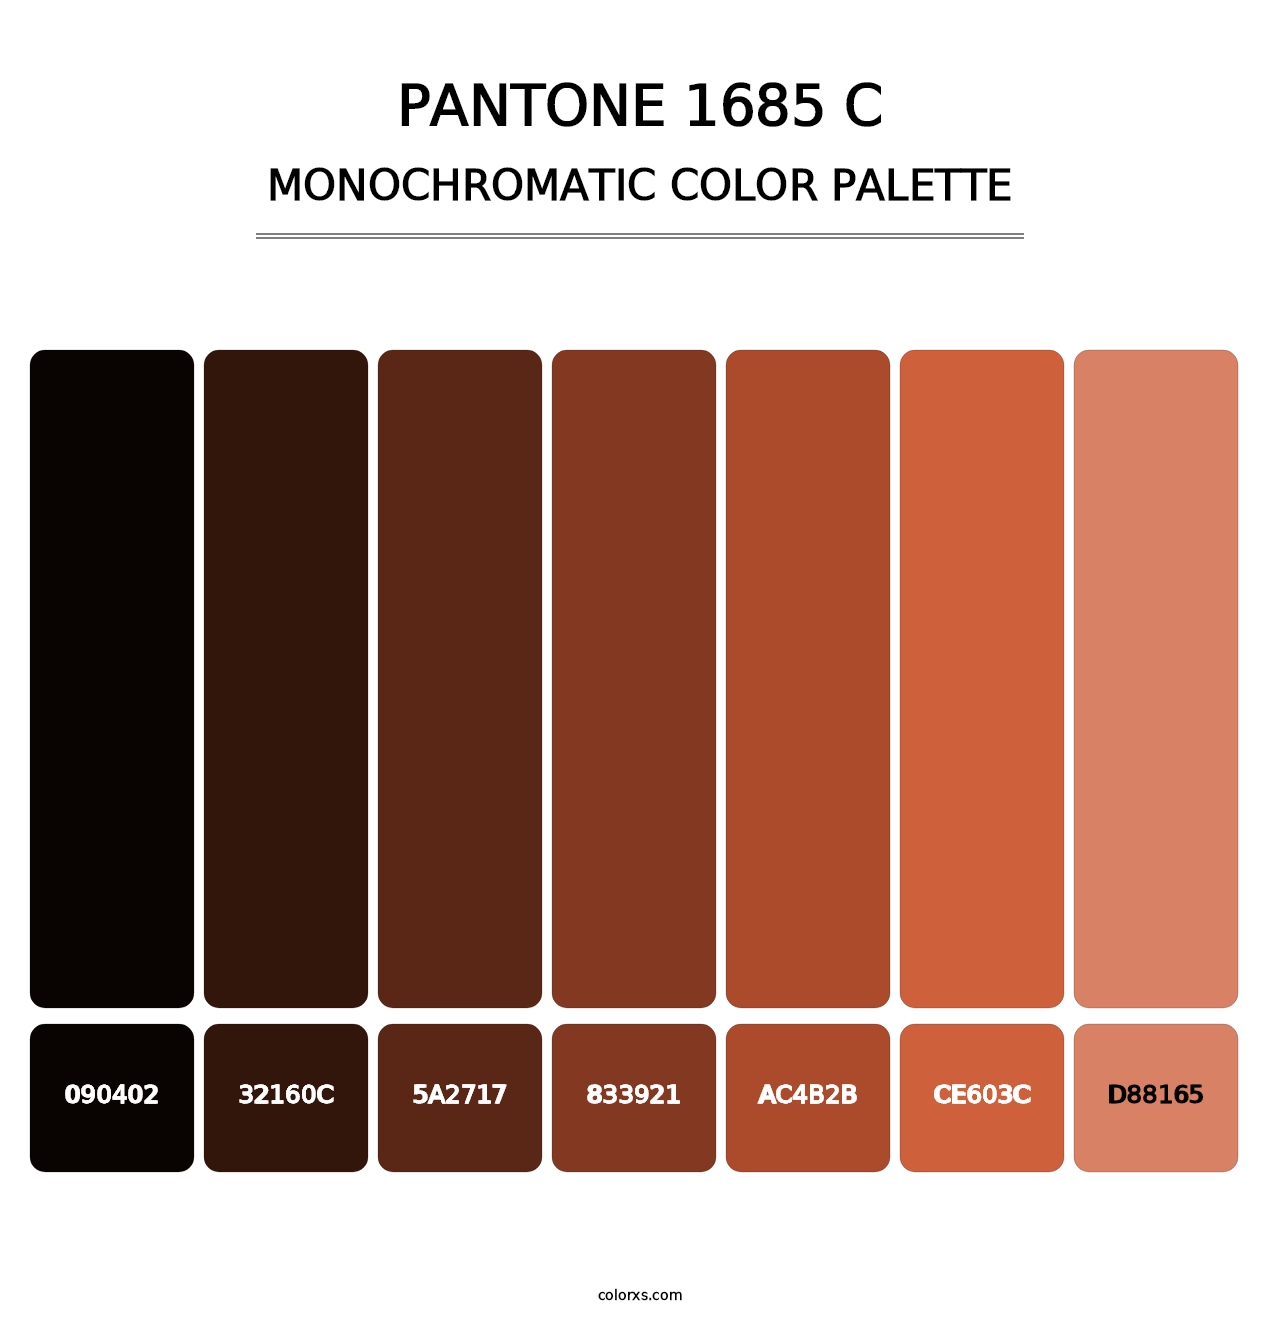 PANTONE 1685 C - Monochromatic Color Palette